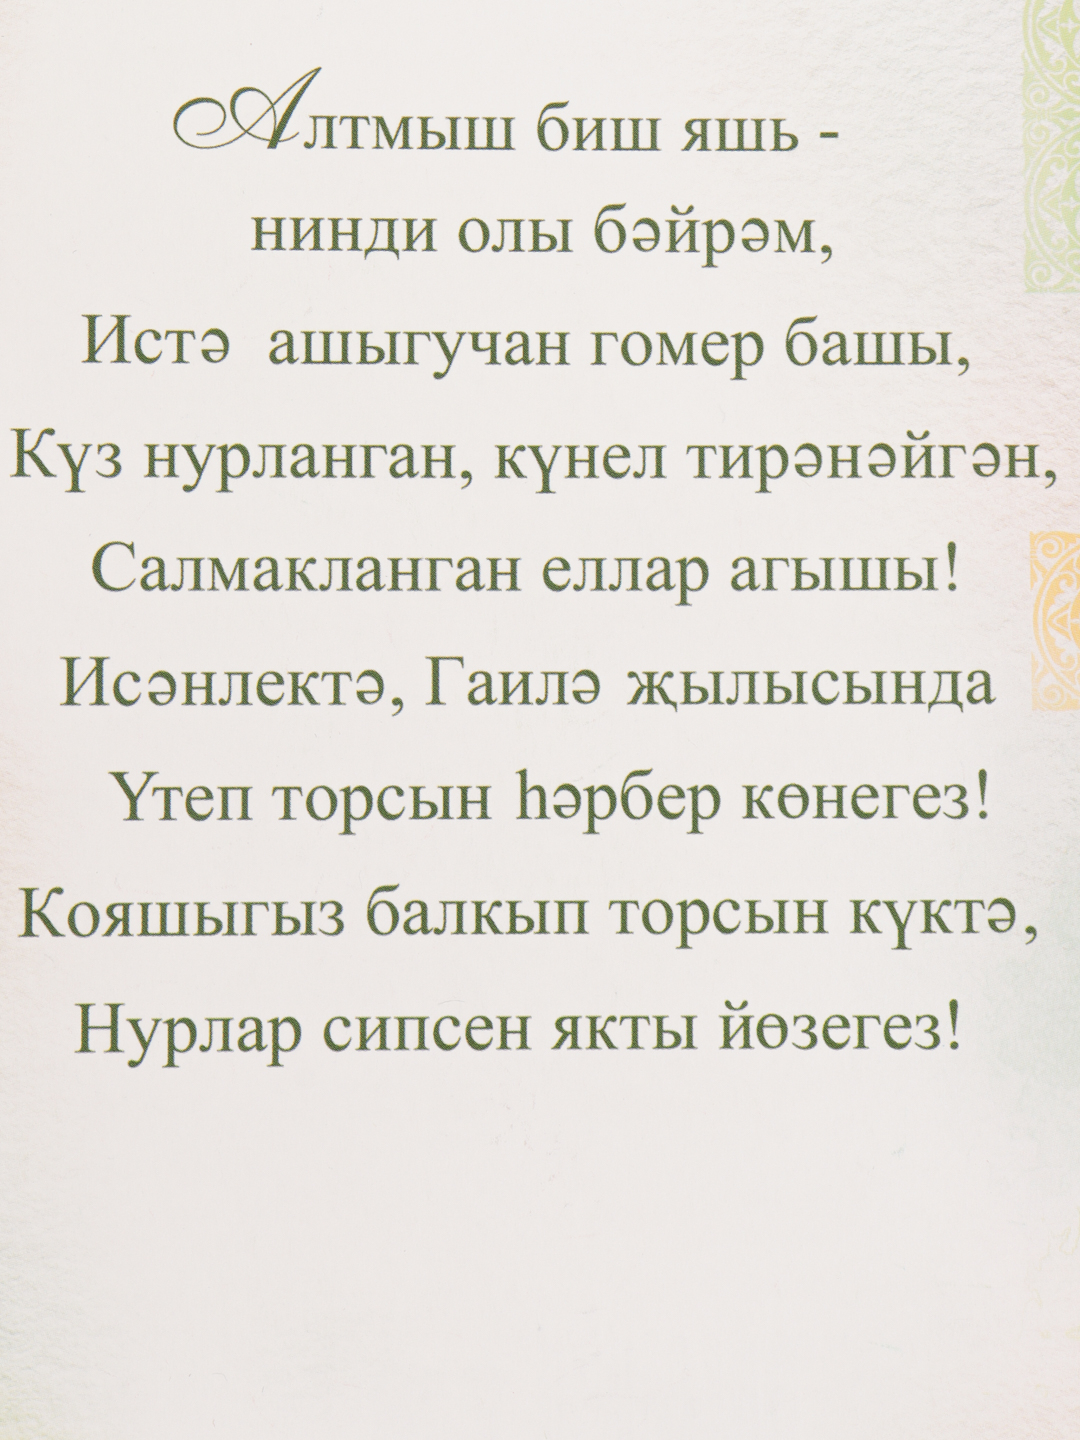 Открытки на татарском языке